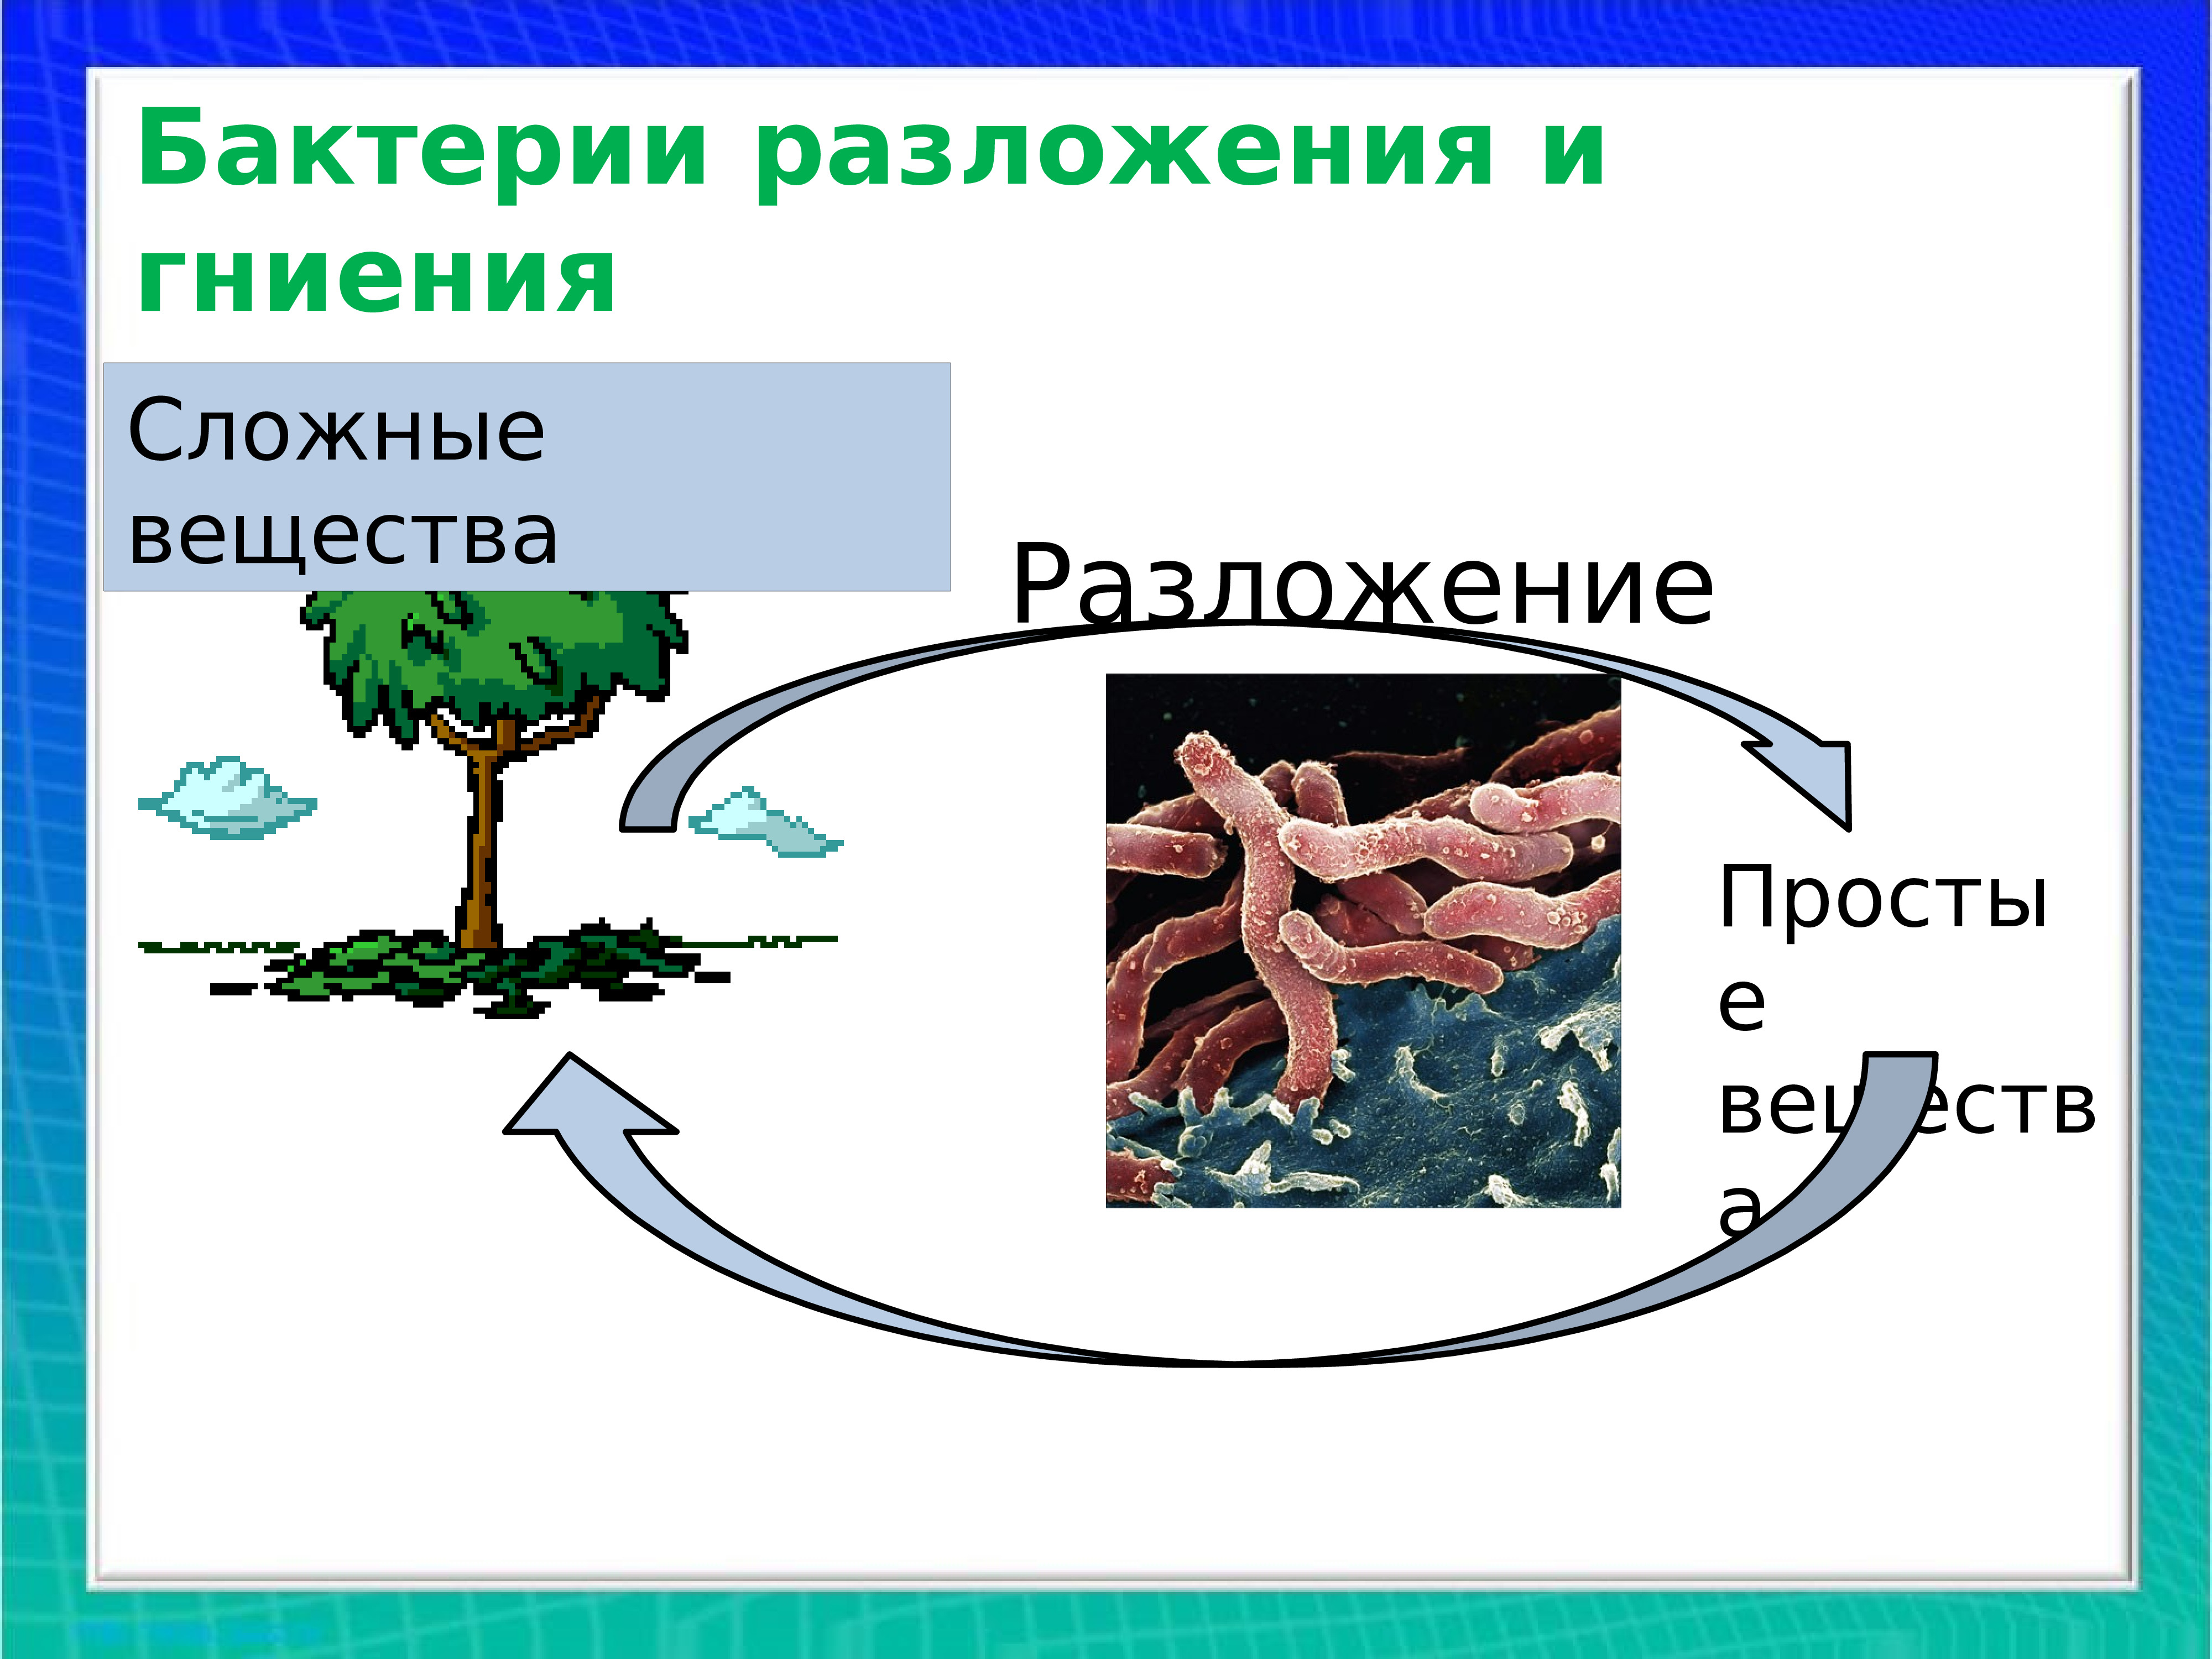 Какую роль бактерии играют в природе 7. Полезные бактерии в природе. Роль бактерий. Схема бактерий в природе и жизни человека.